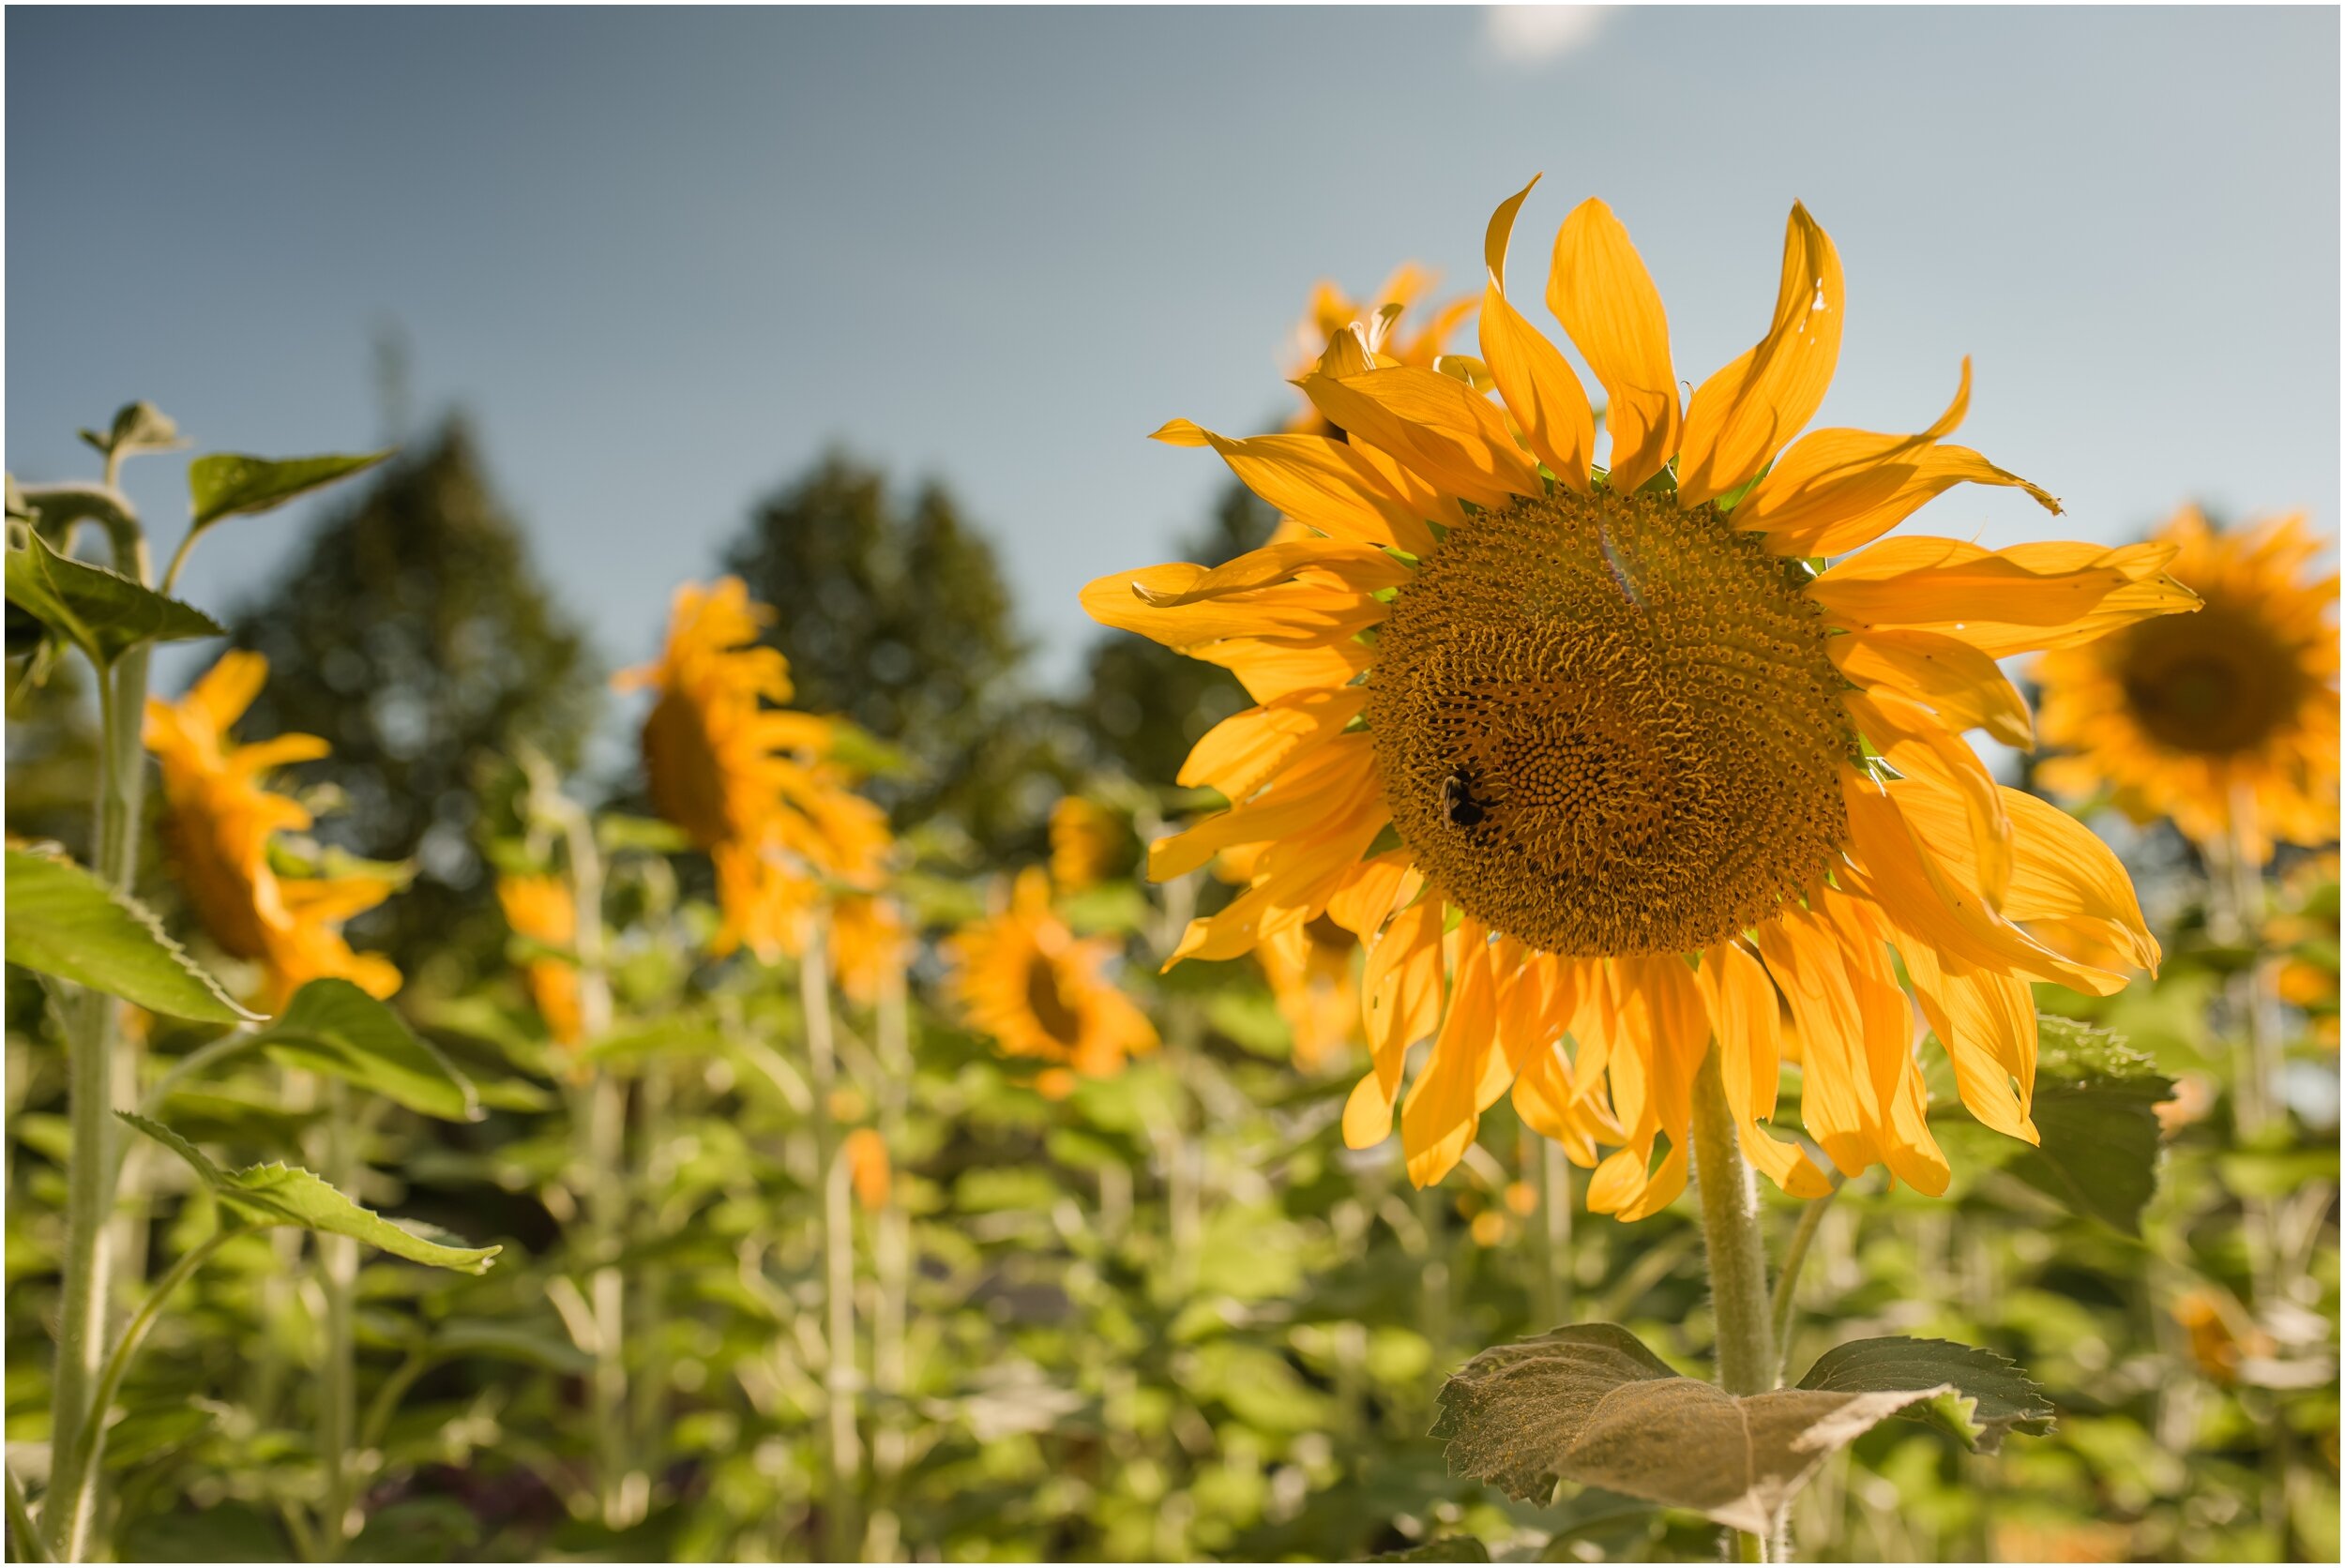 Sunflower at cantigny park